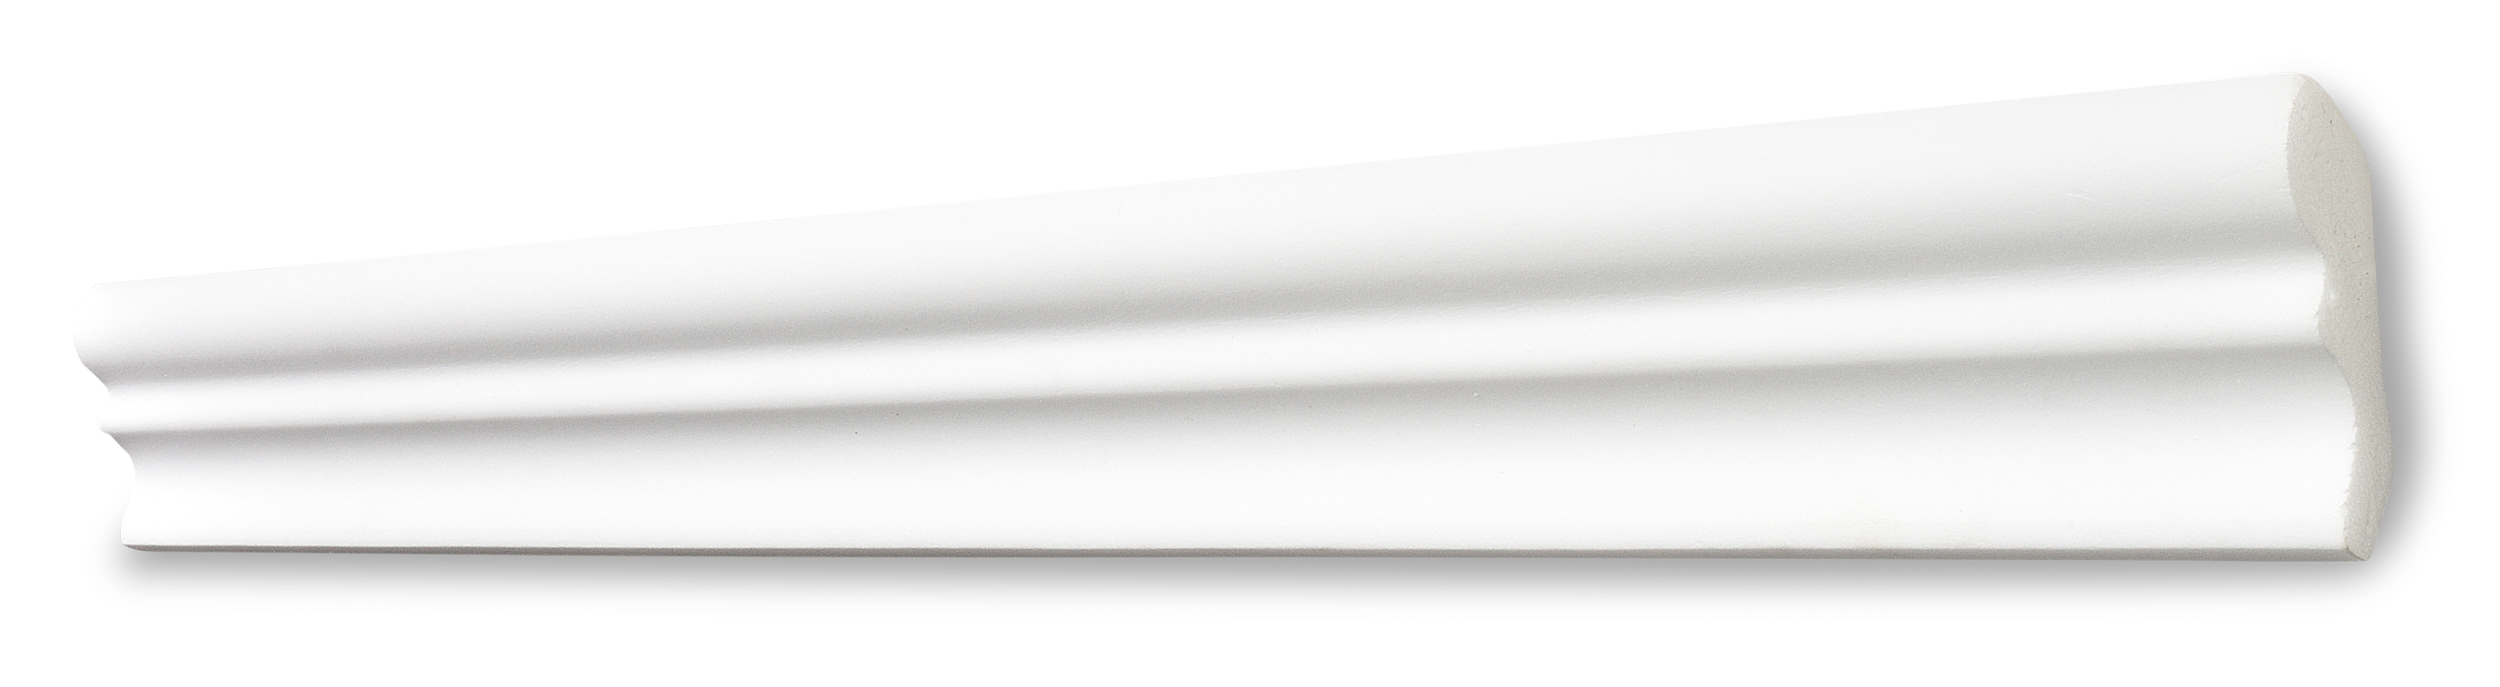 Decosa Zierprofil D50 (Silvana), weiß, 40 x 50 mm, Länge: 2 m